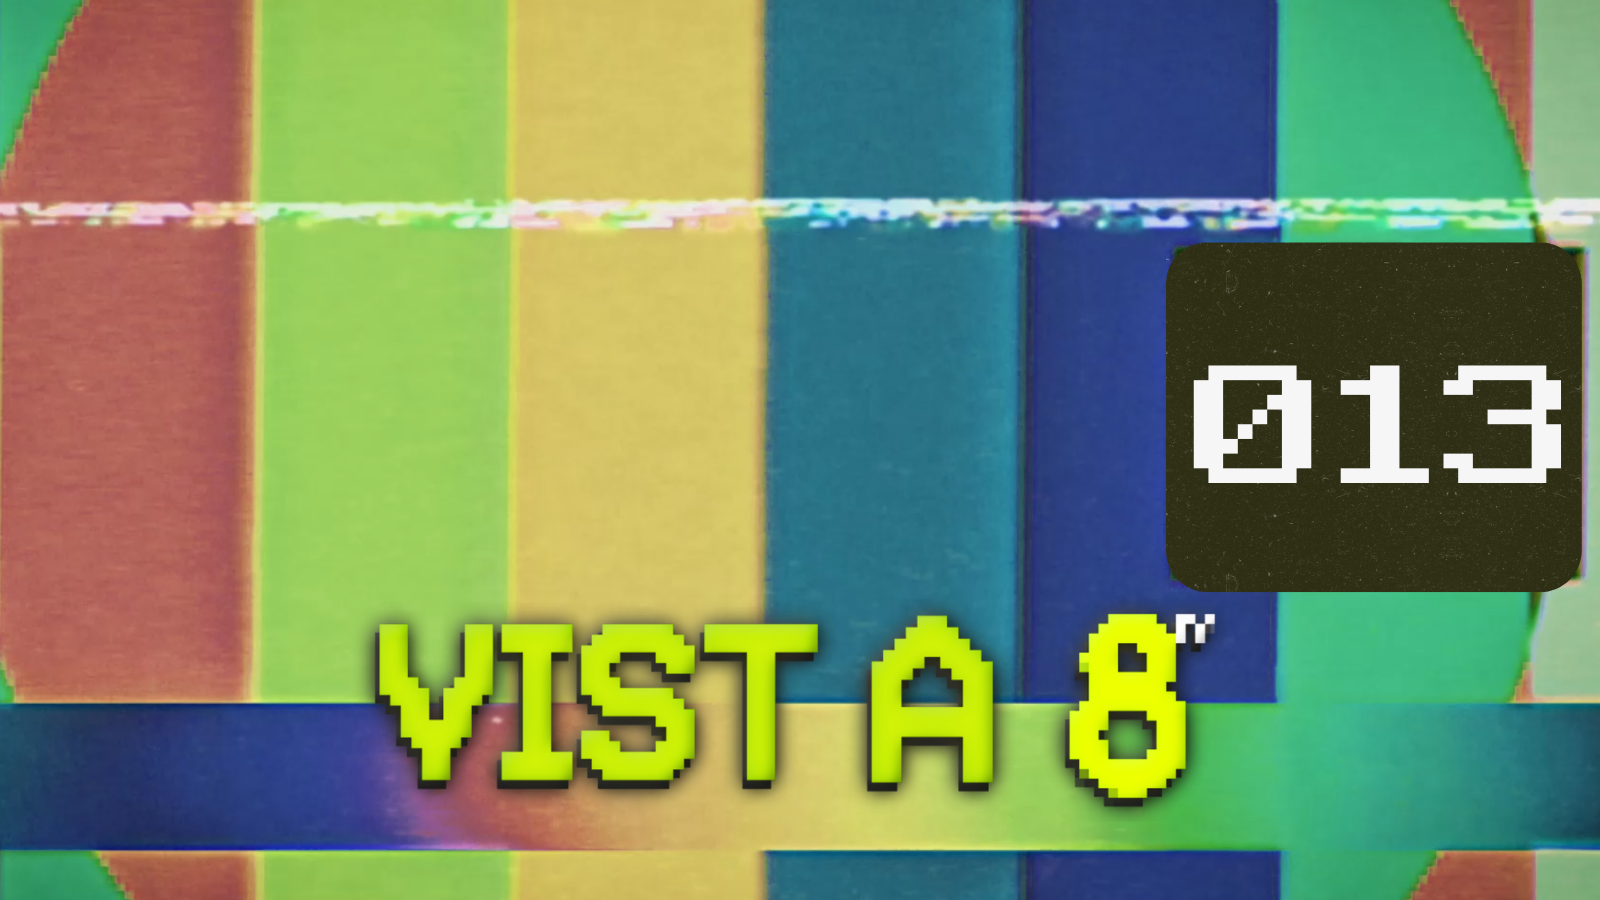 VIST A 8TV - EPISODI 13